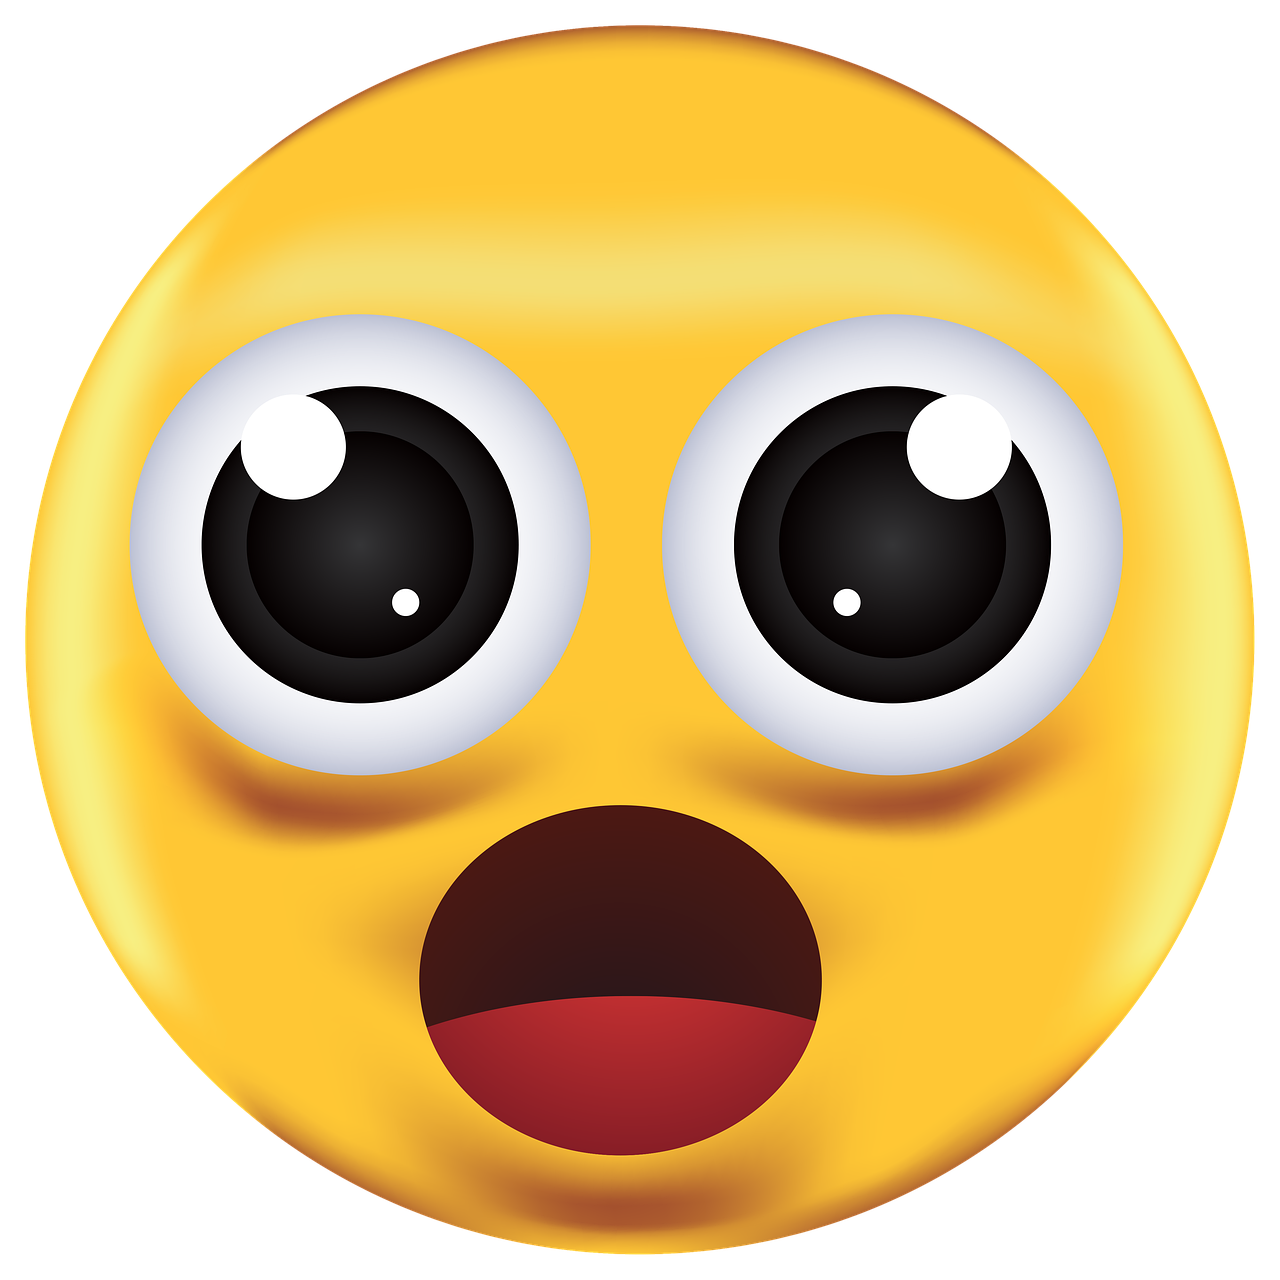 Shocked Emoji Emoticon - Free image on Pixabay